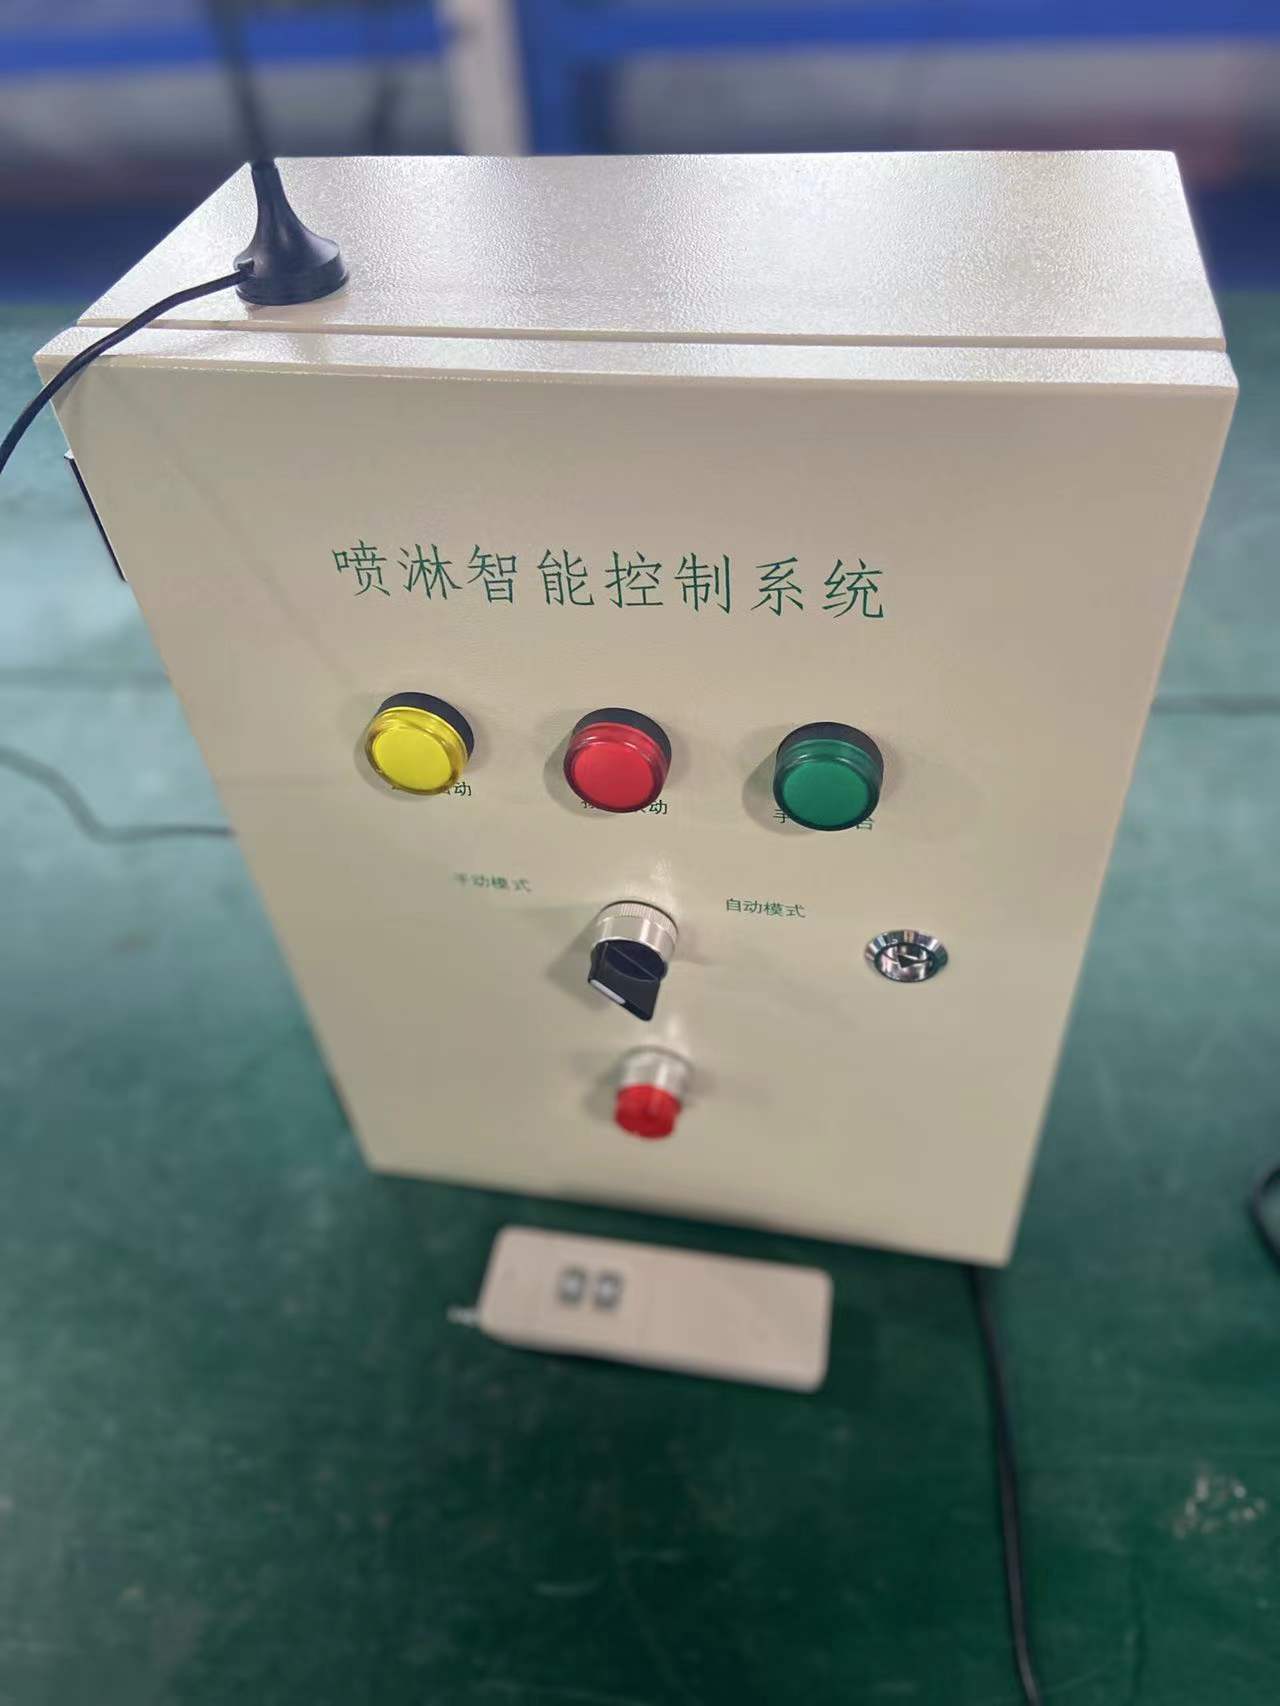 萍乡喷淋智能控制系统 安徽赛芙智能科技有限公司